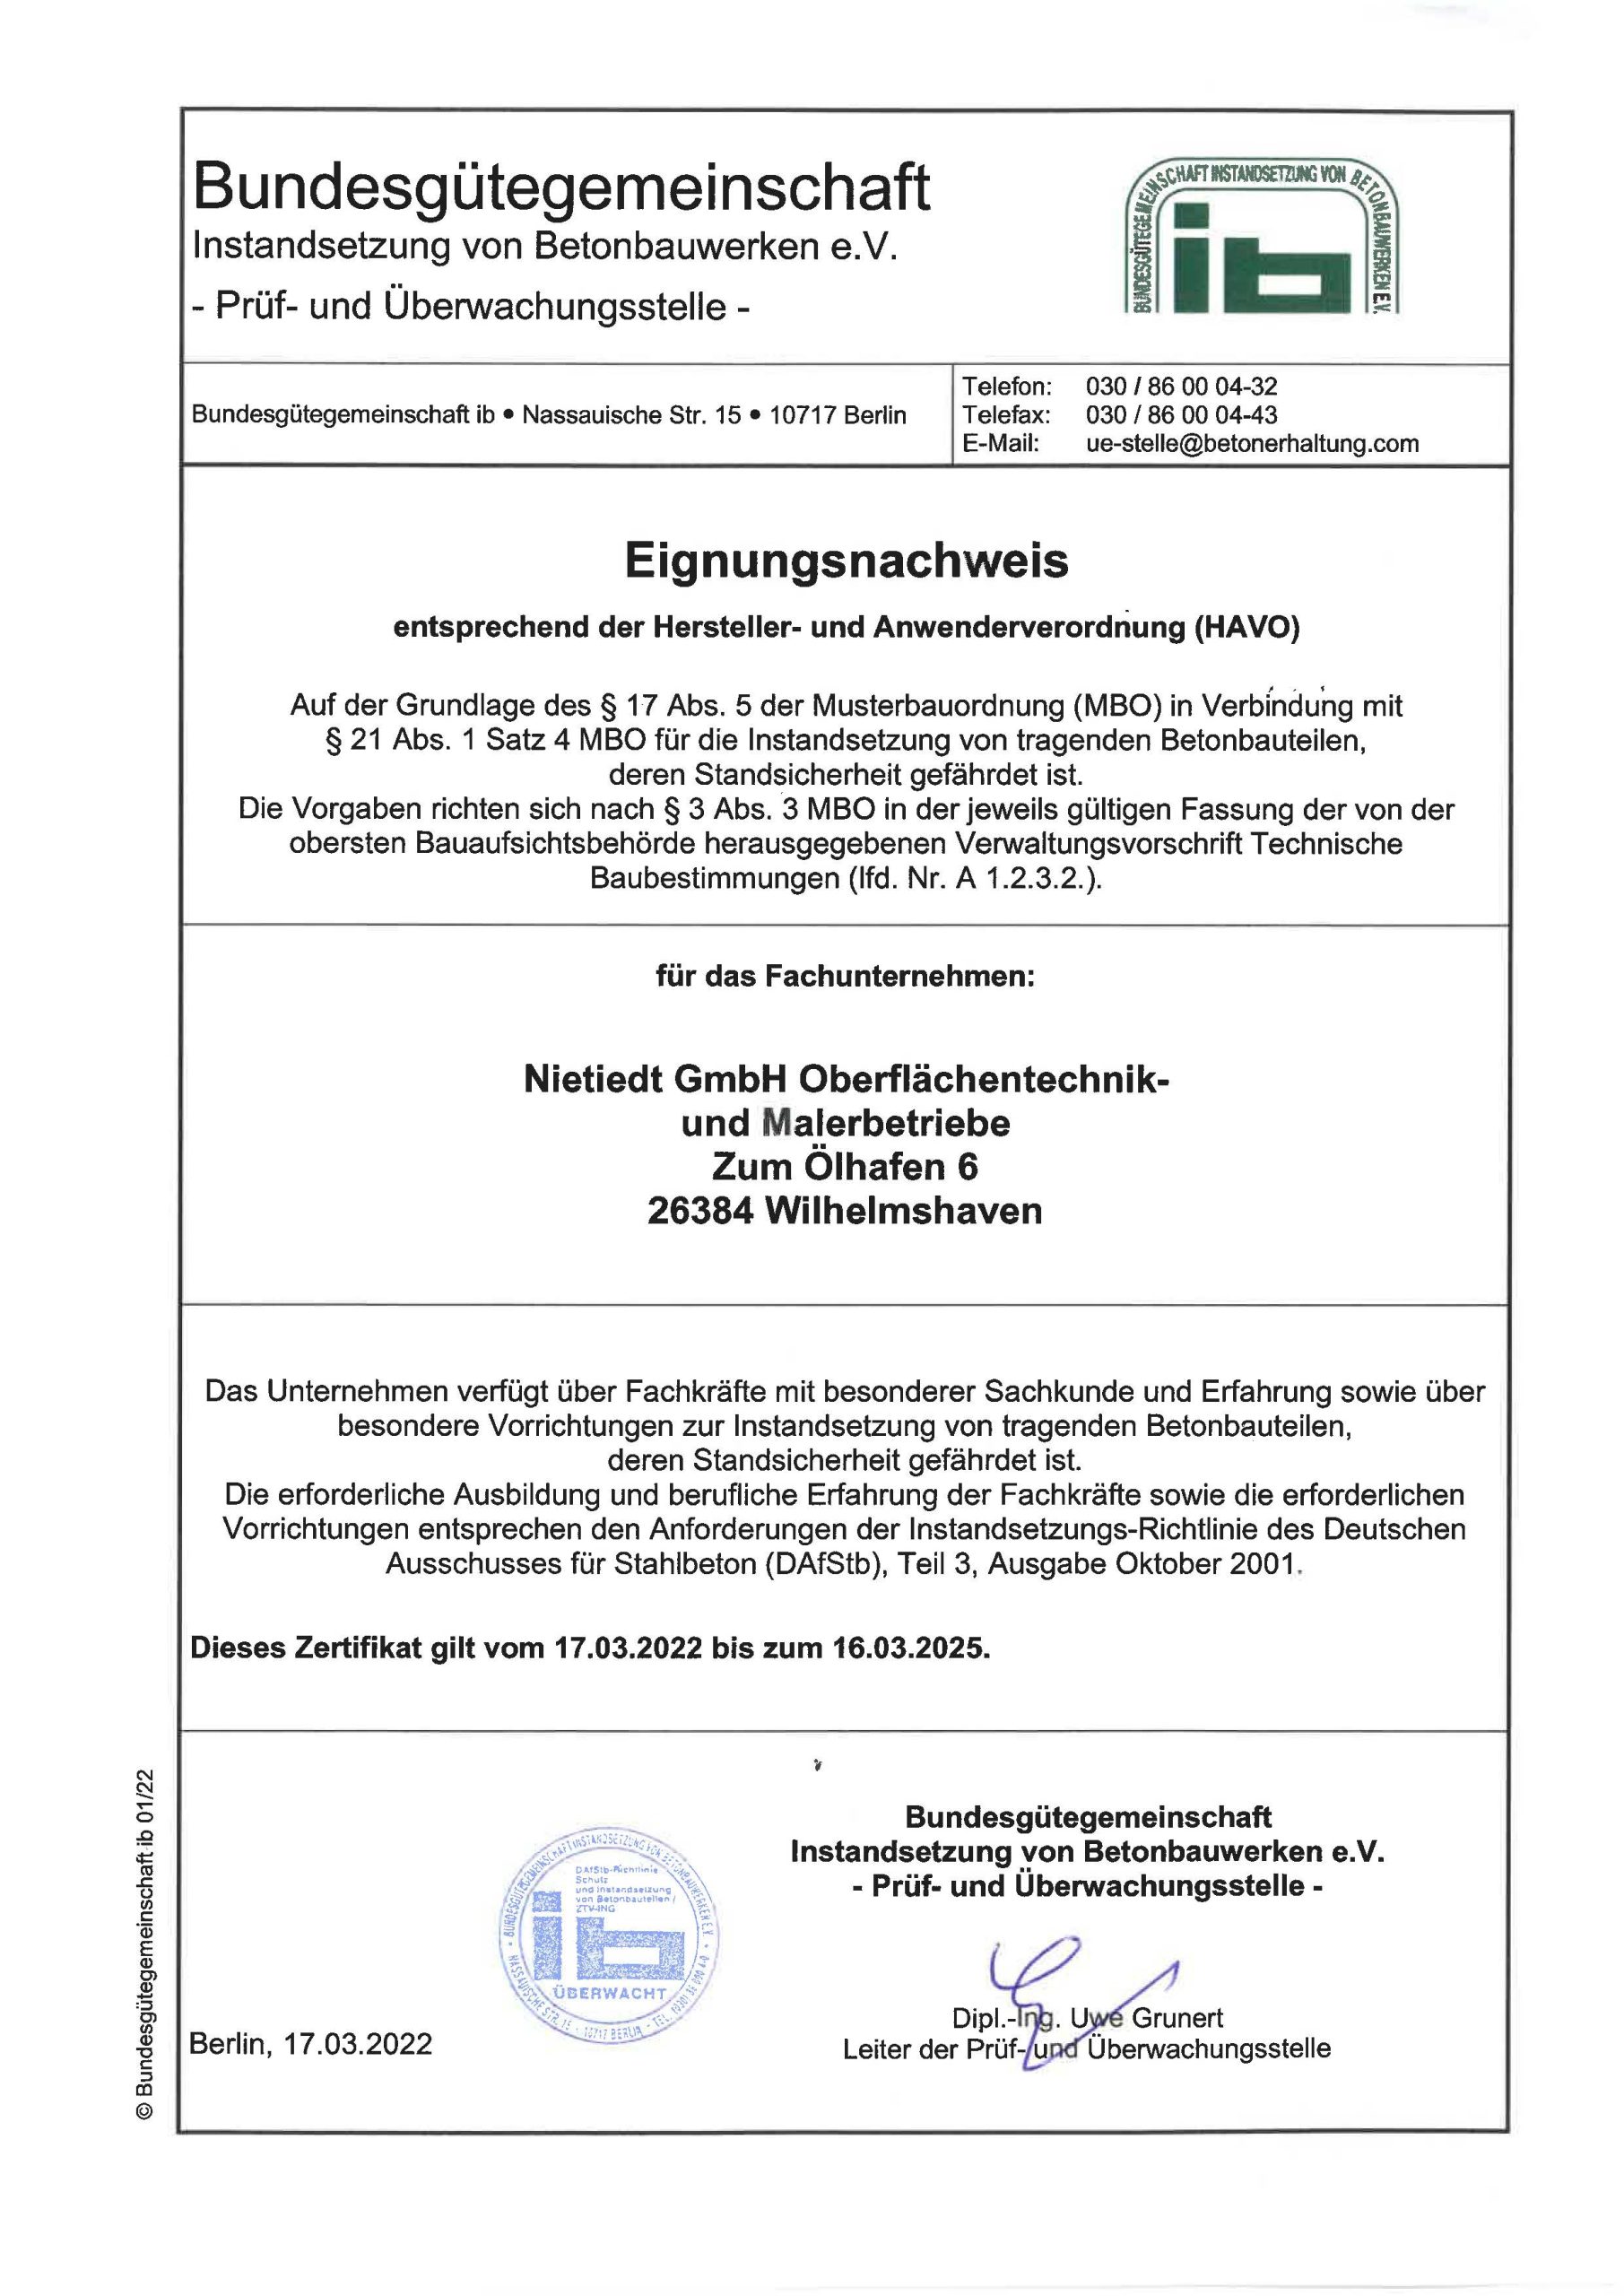 Eignungsnachweis entsprechend der Hersteller- und Arbeitsverordnung (gültig bis 03/2025)